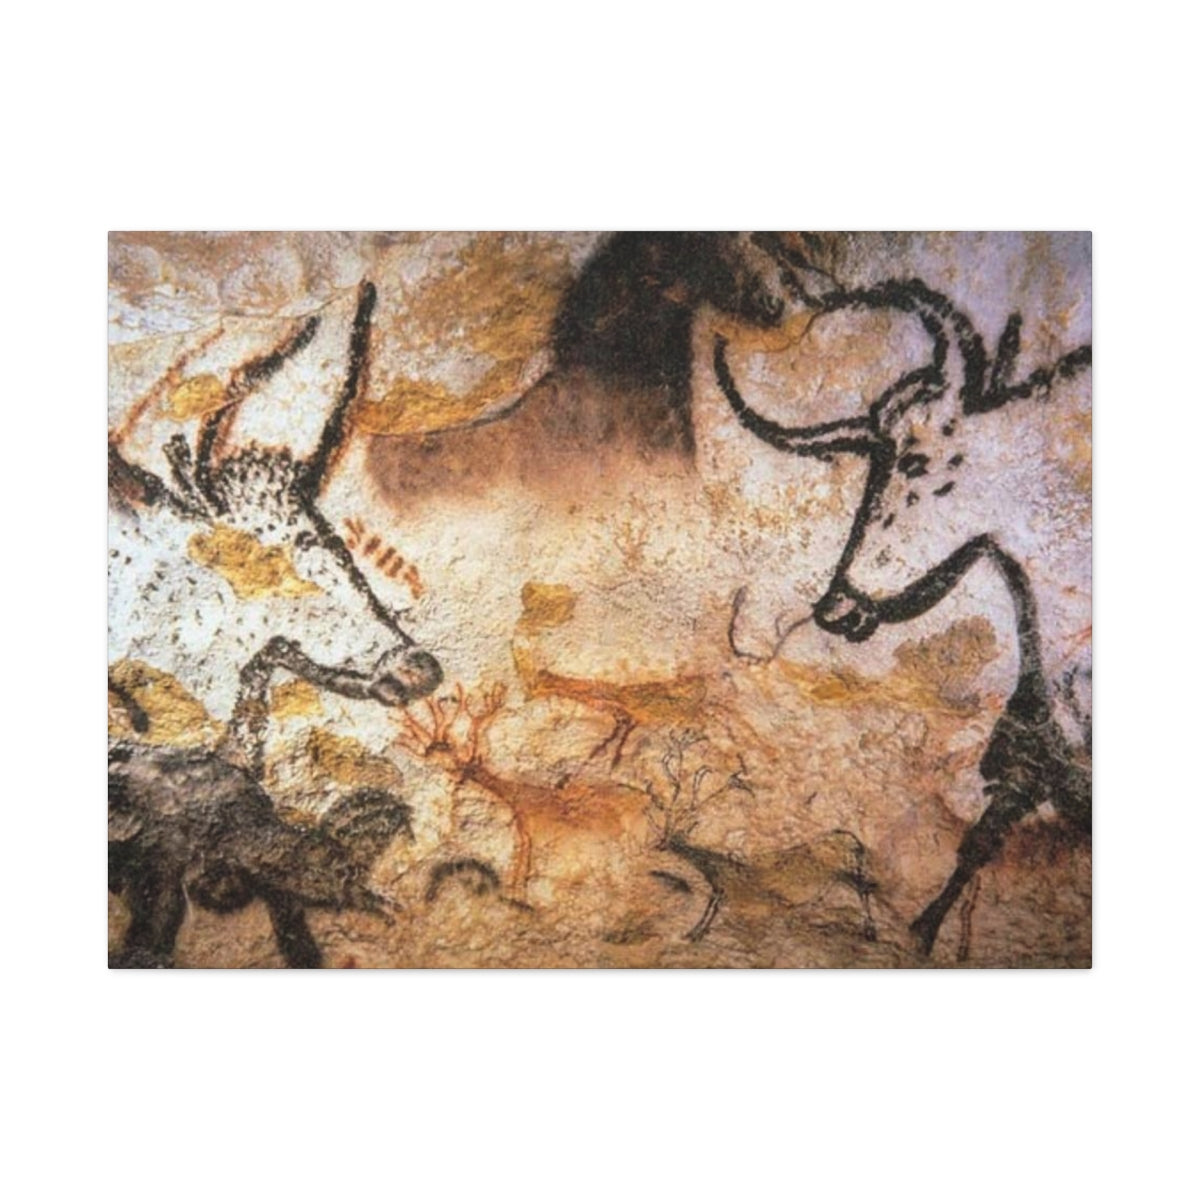 Lascaux Cave Art